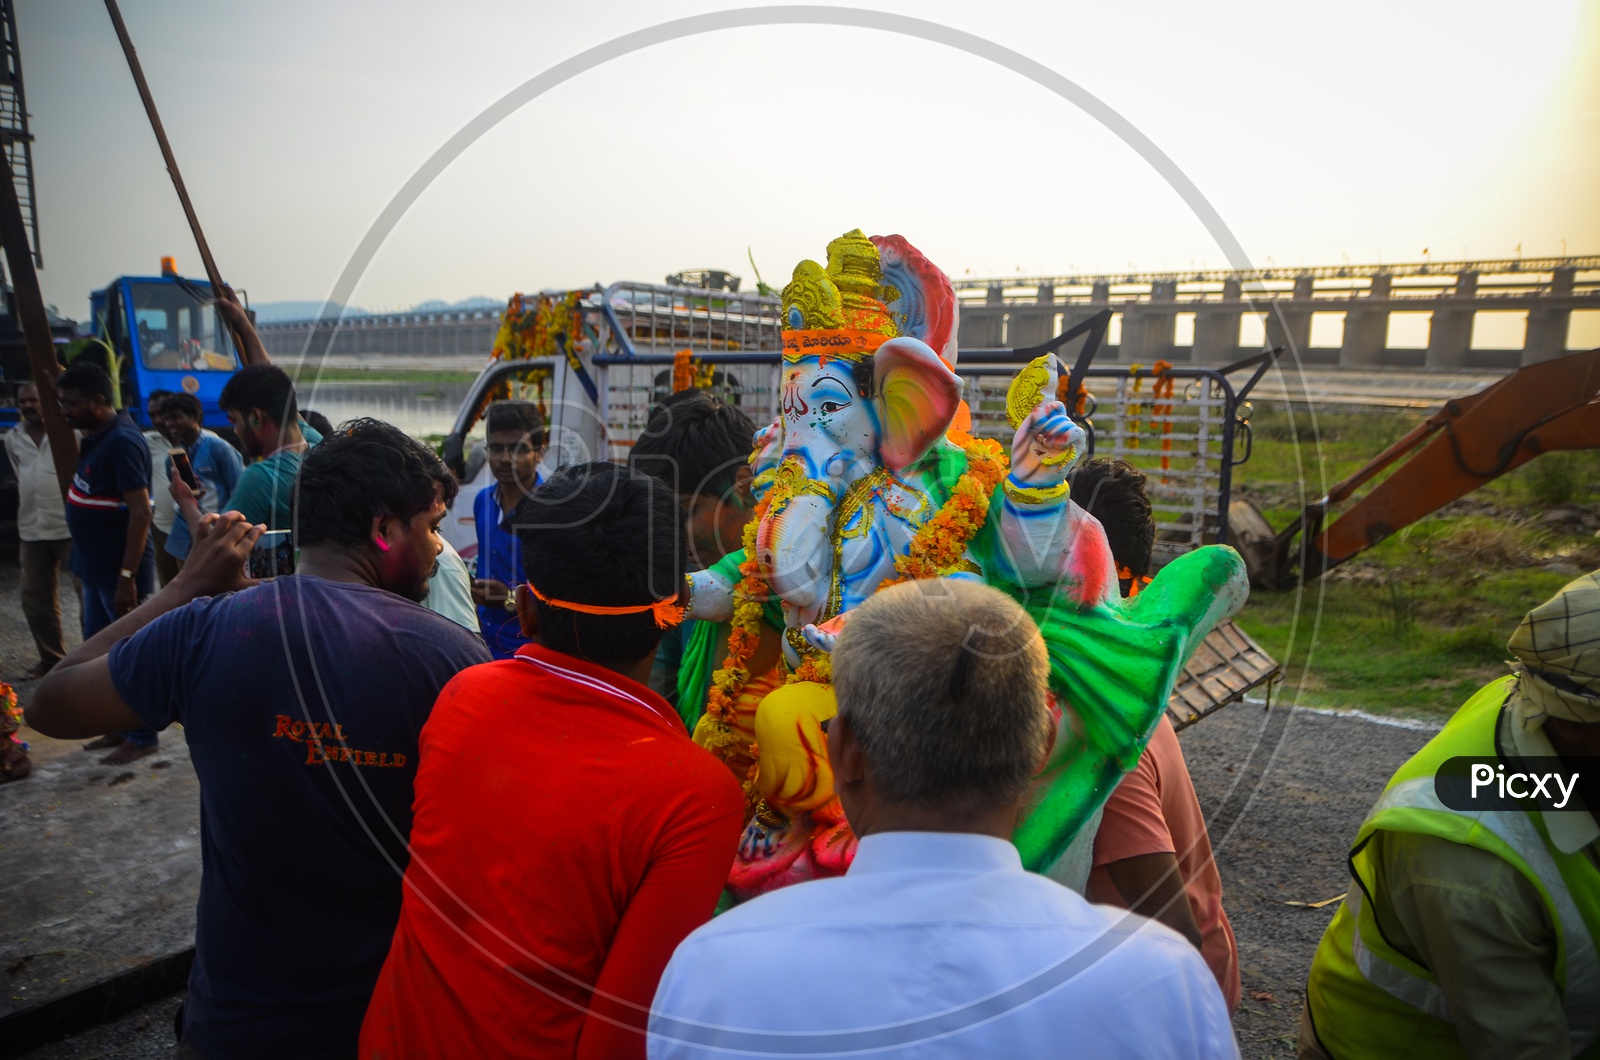 Ganesh idol, Ganesh chaturthi, Ganesh immersion